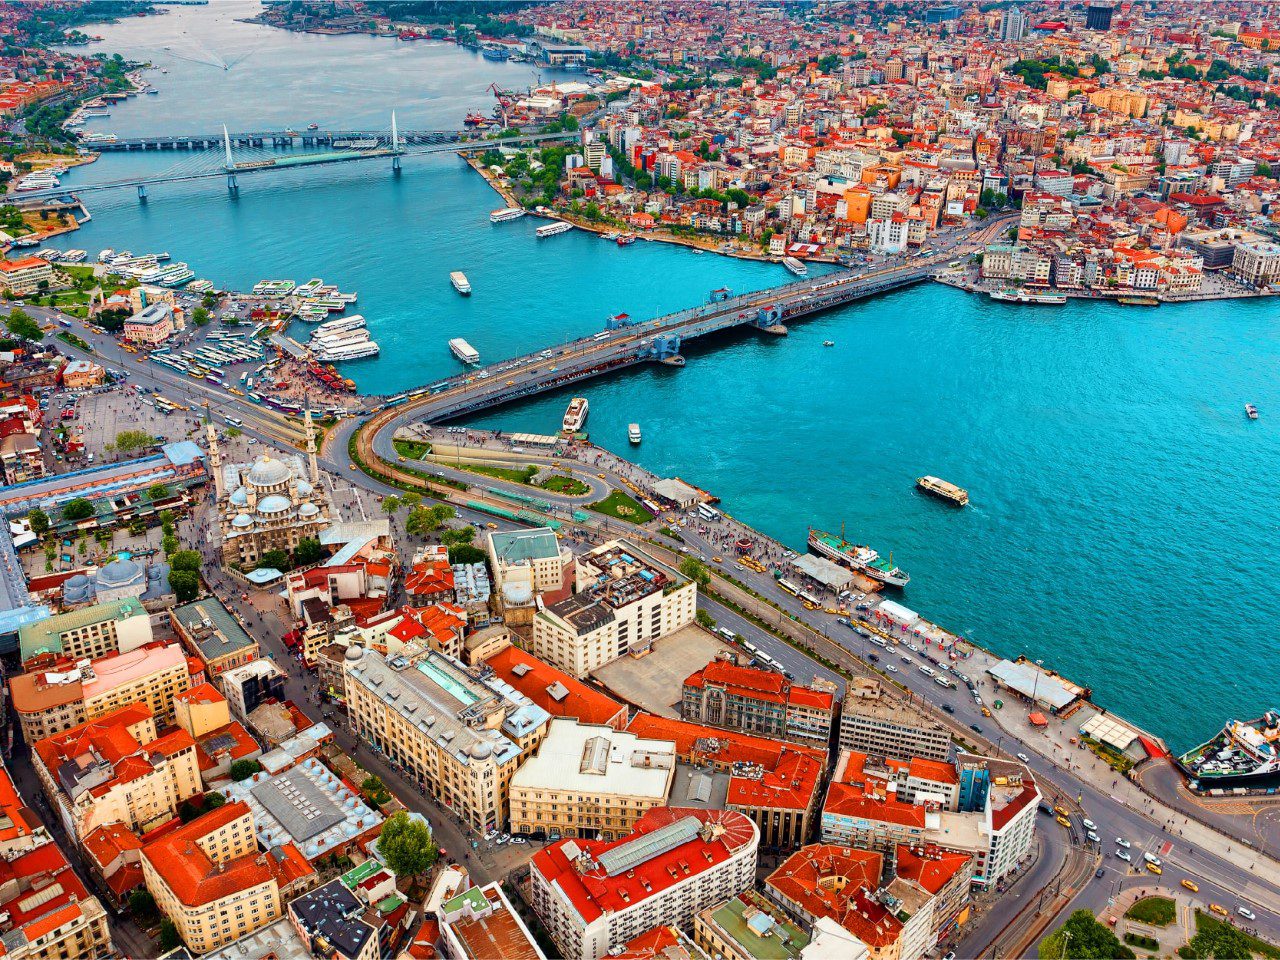 Istanbul Golden Horn: Historic Waterway